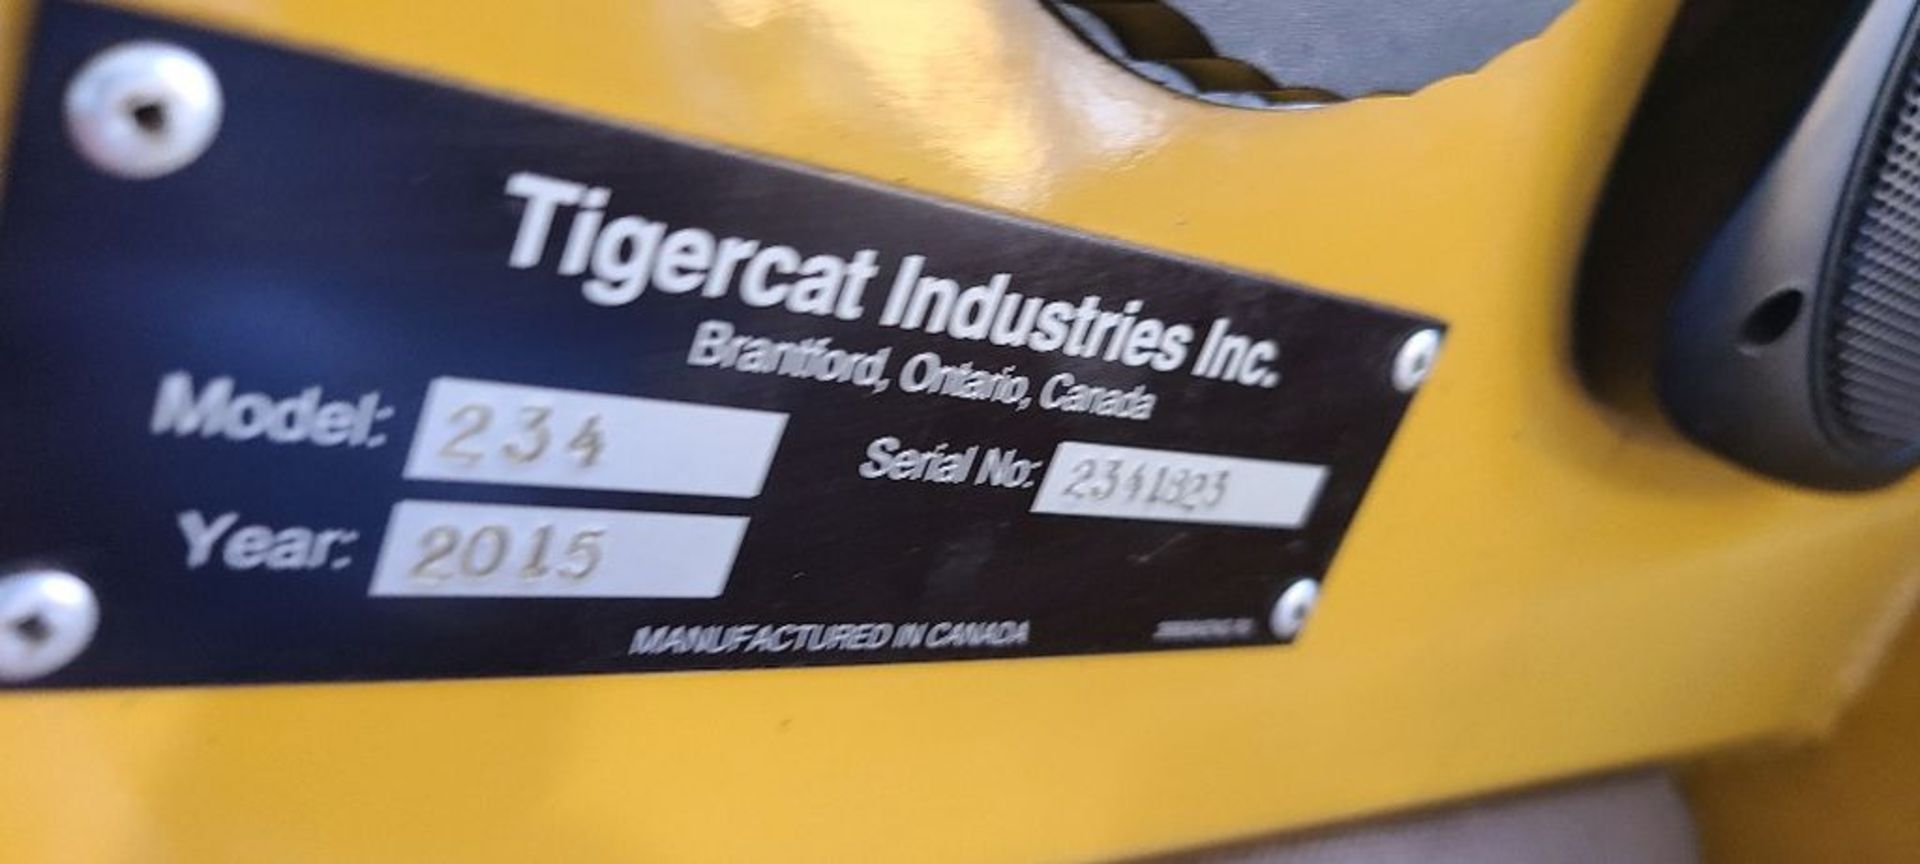 2015 Tigercat 234 Log Loader - Image 29 of 76